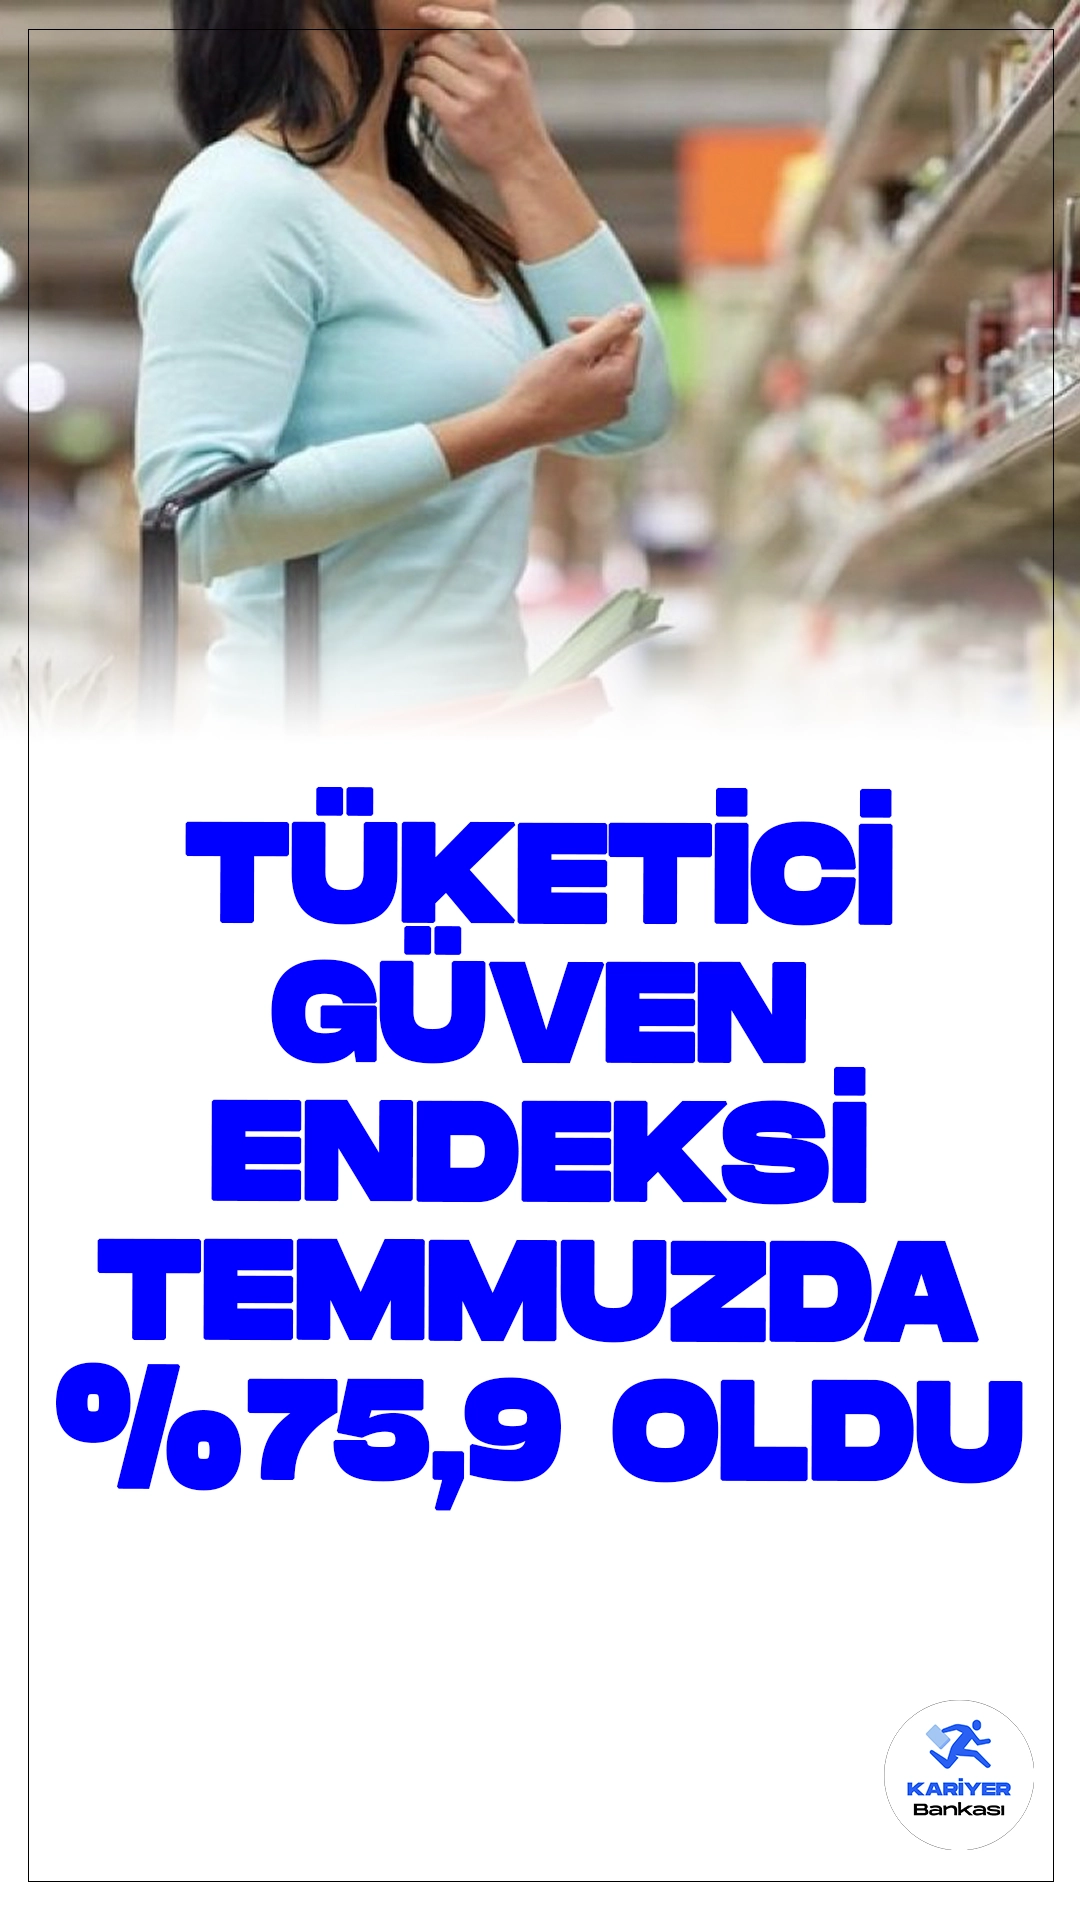 Temmuz Ayında Tüketici Güven Endeksi Yüzde 3,1 Azalarak 75,9 Oldu.Türkiye İstatistik Kurumu (TÜİK), temmuz ayına ilişkin tüketici güven endeksi verilerini açıkladı. Buna göre, Türkiye İstatistik Kurumu ve Türkiye Cumhuriyet Merkez Bankası işbirliği ile yürütülen tüketici eğilim anketi sonuçlarından hesaplanan tüketici güven endeksi, Haziran ayında 78,3 iken Temmuz ayında yüzde 3,1 oranında azalarak 75,9 oldu.